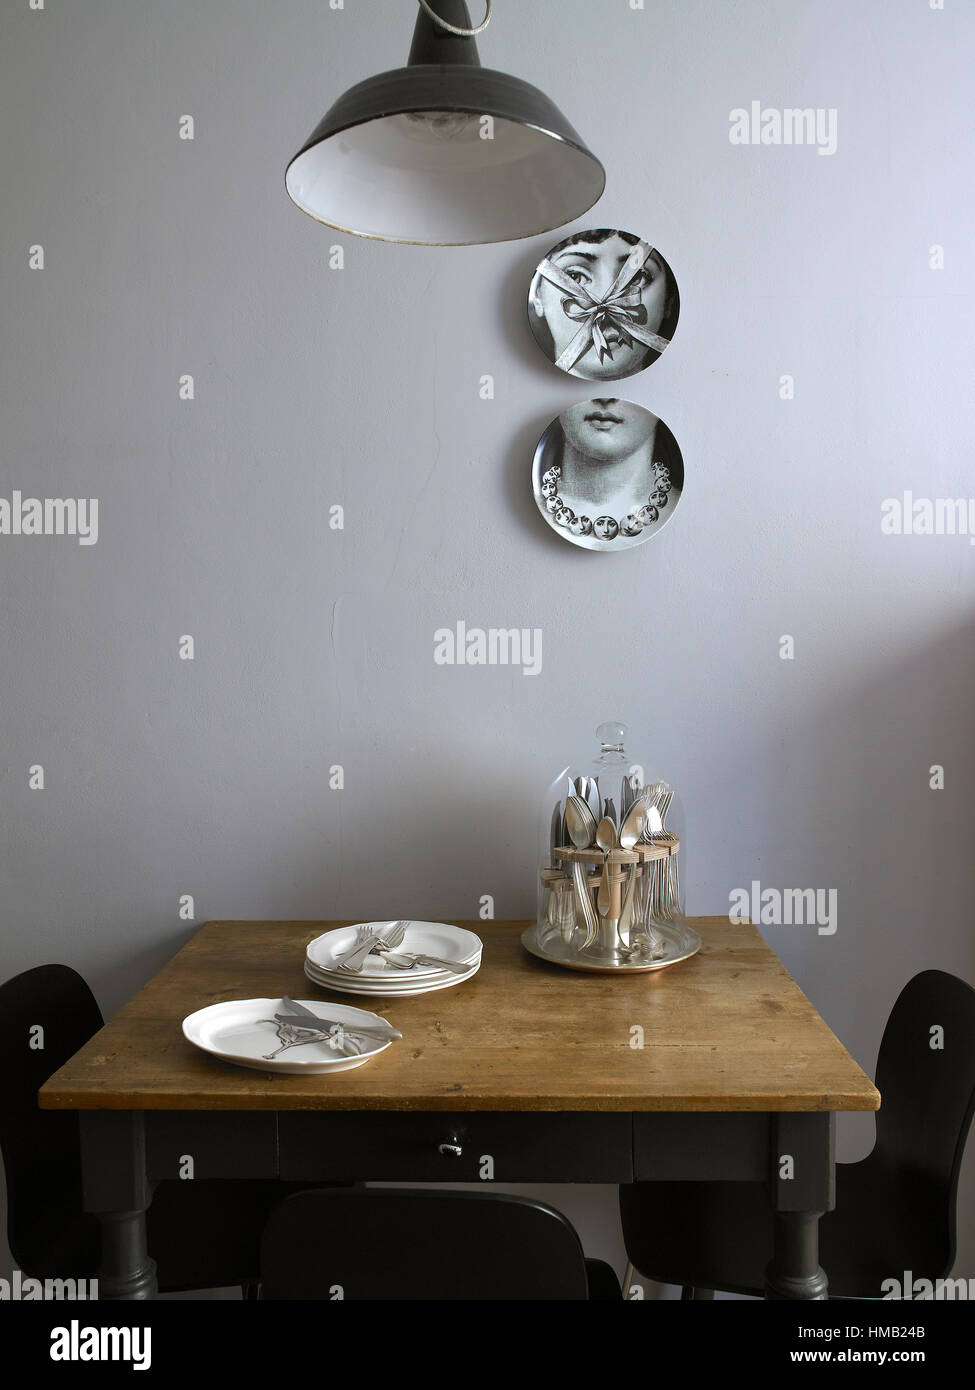 All'interno di un appartamento, un tavolino, cucina con piatti Fornasetti  sulla parete Foto stock - Alamy